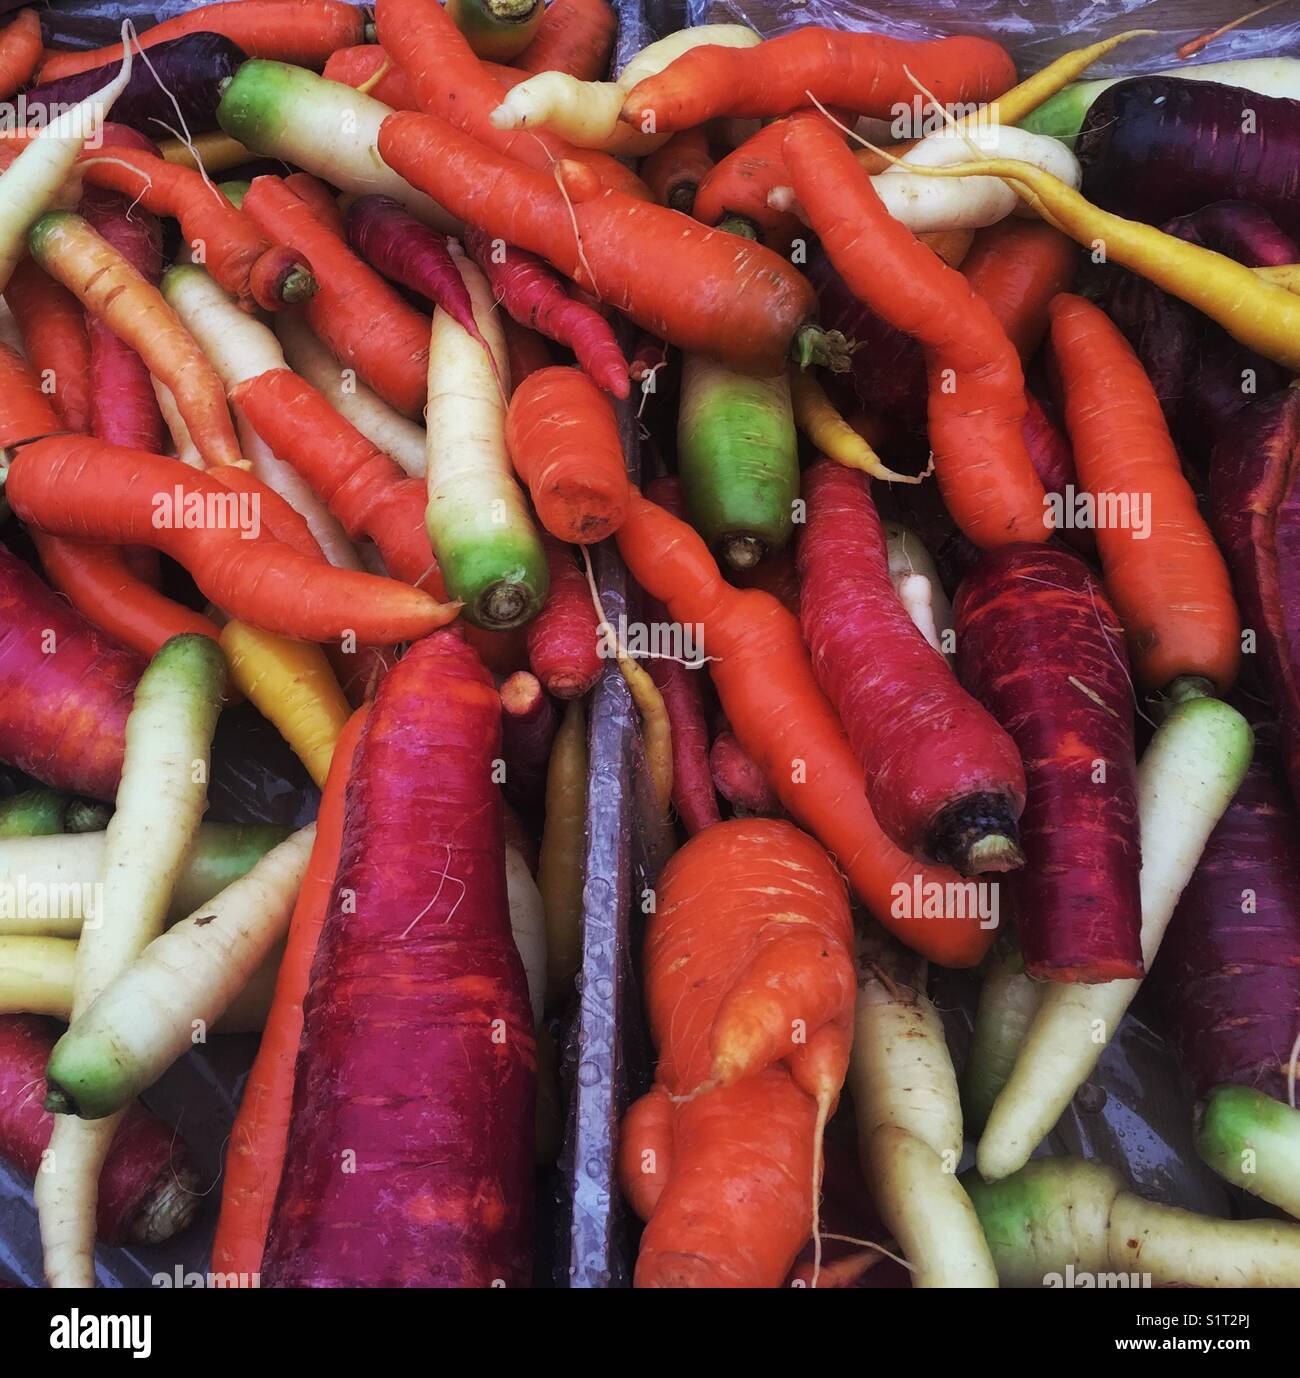 Rainbow Carrots at Market Stock Photo